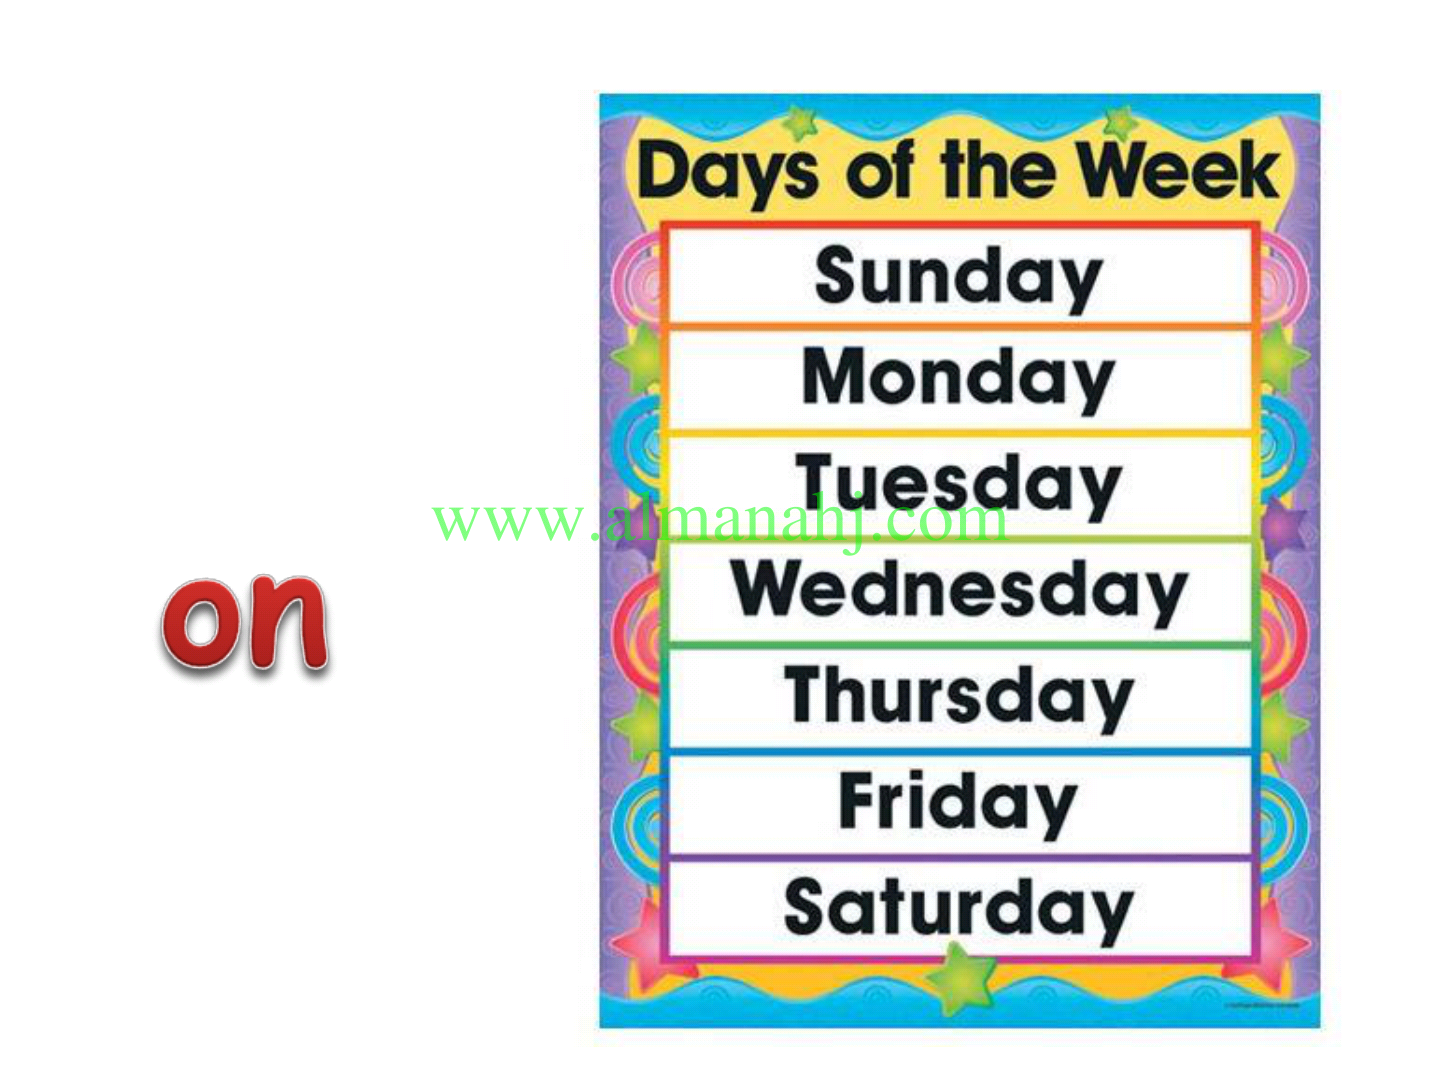 Дни недели по английски каждый день. Недели на английском. Закладка дни недели на английском. Название дней недели на английском. Карточки с днями недели на английском.